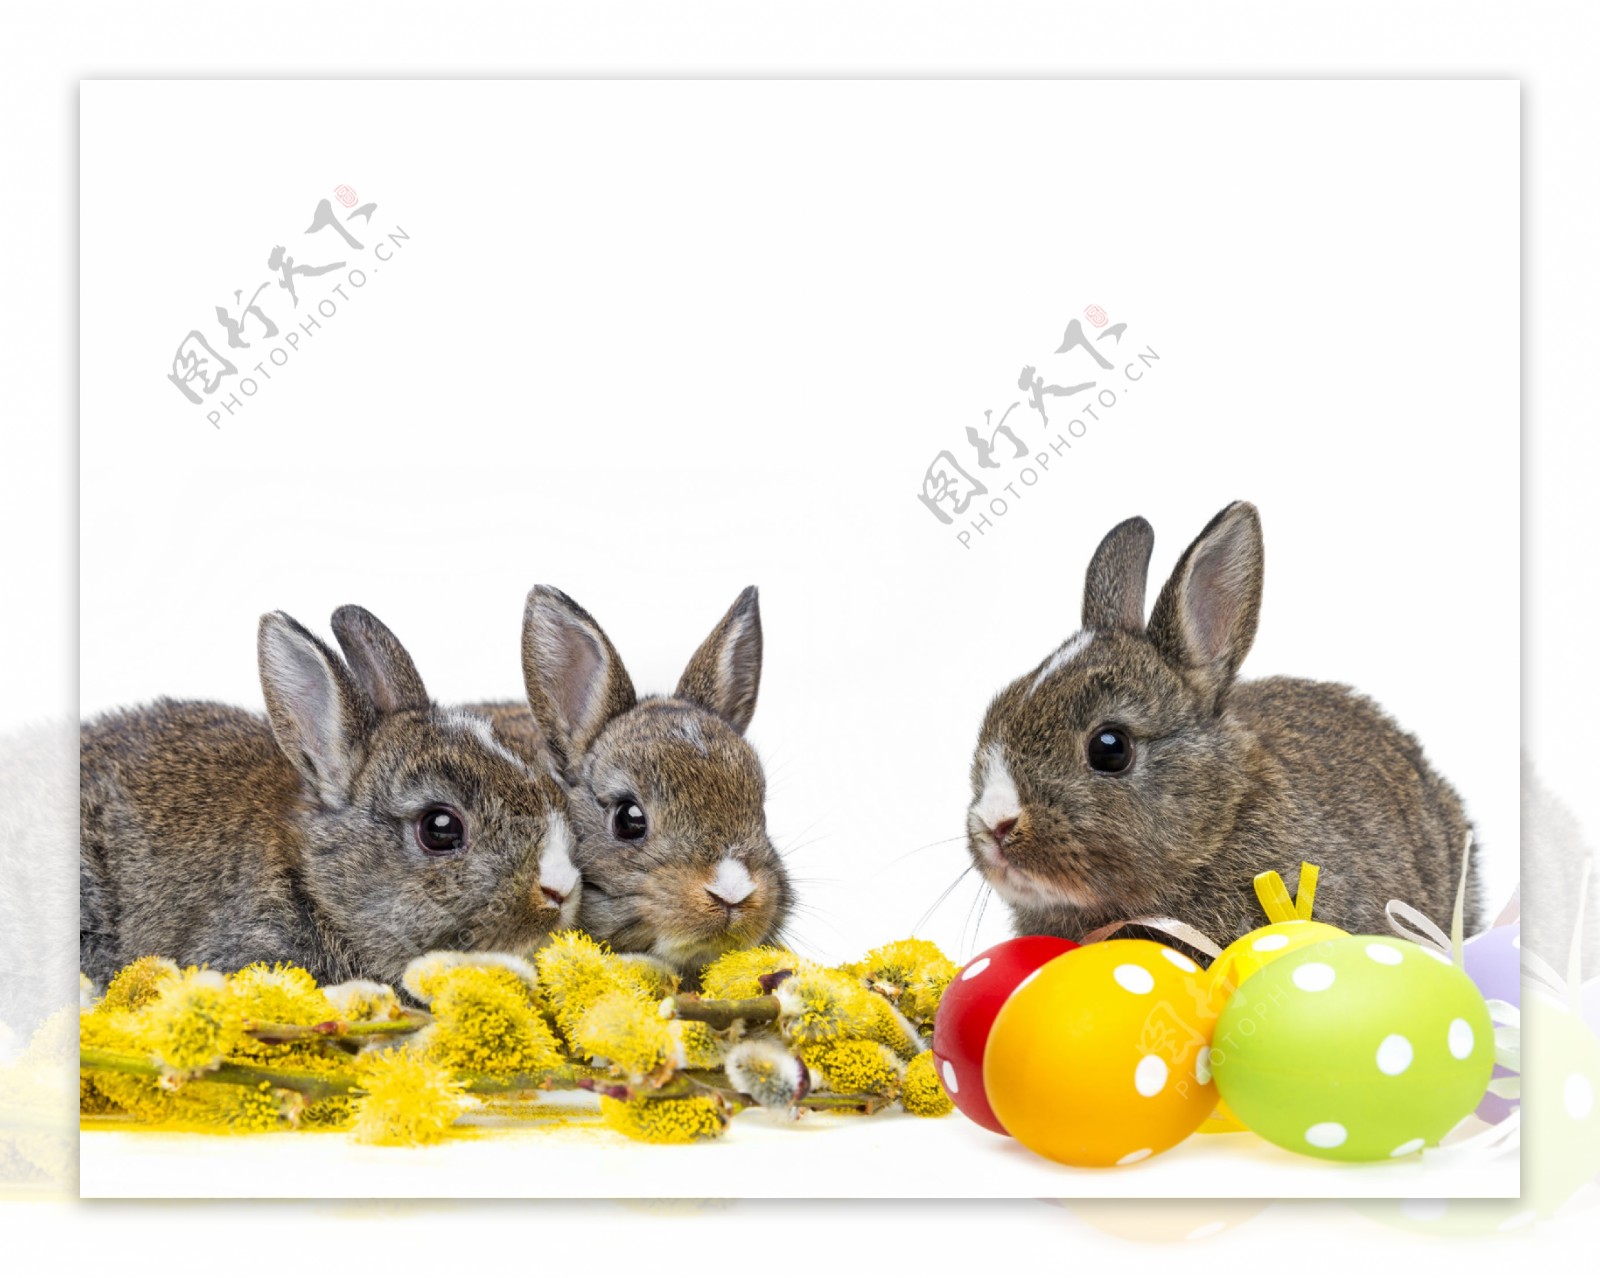 复活节小兔子主题图片